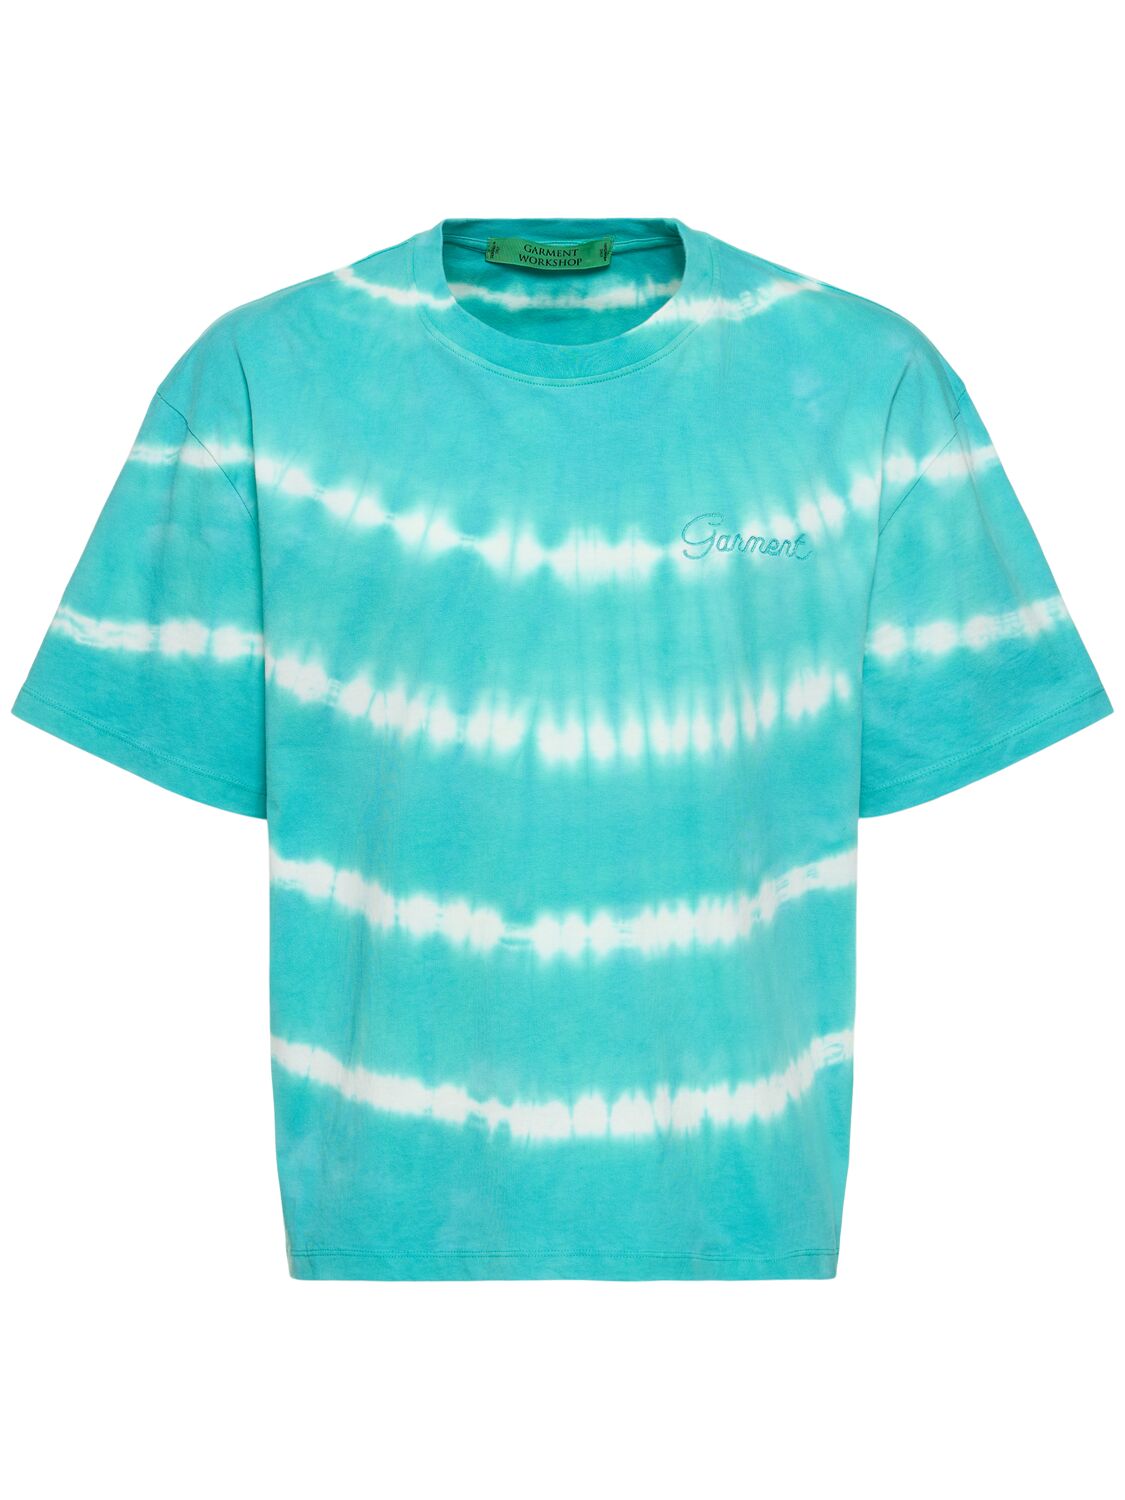 Shibori Dyed Boxy T-shirt